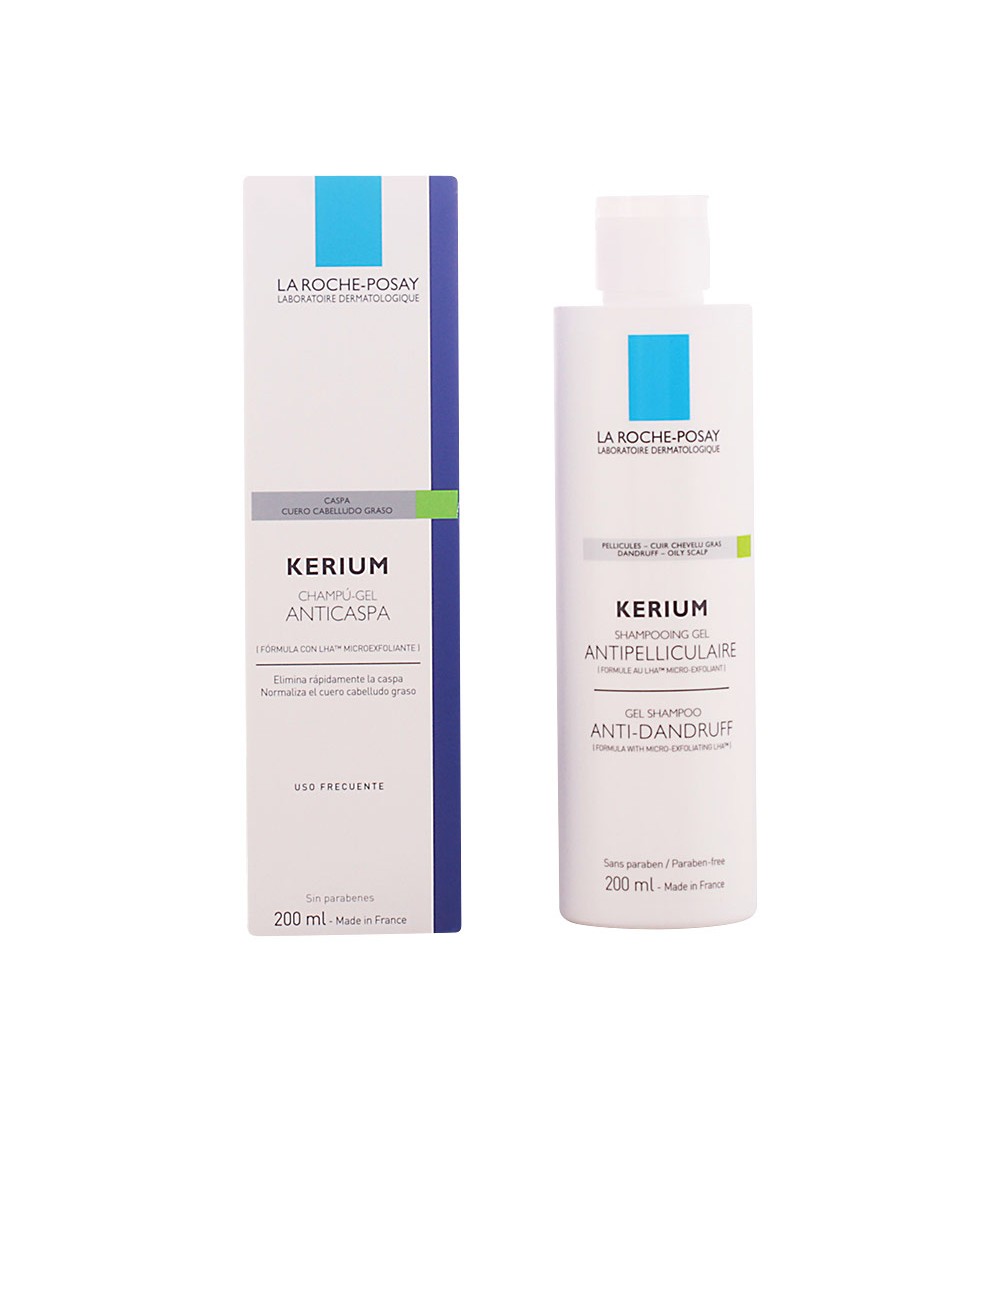 KERIUM shampooing gel antipelliculaire micro-exfoliant 200ml NE76826